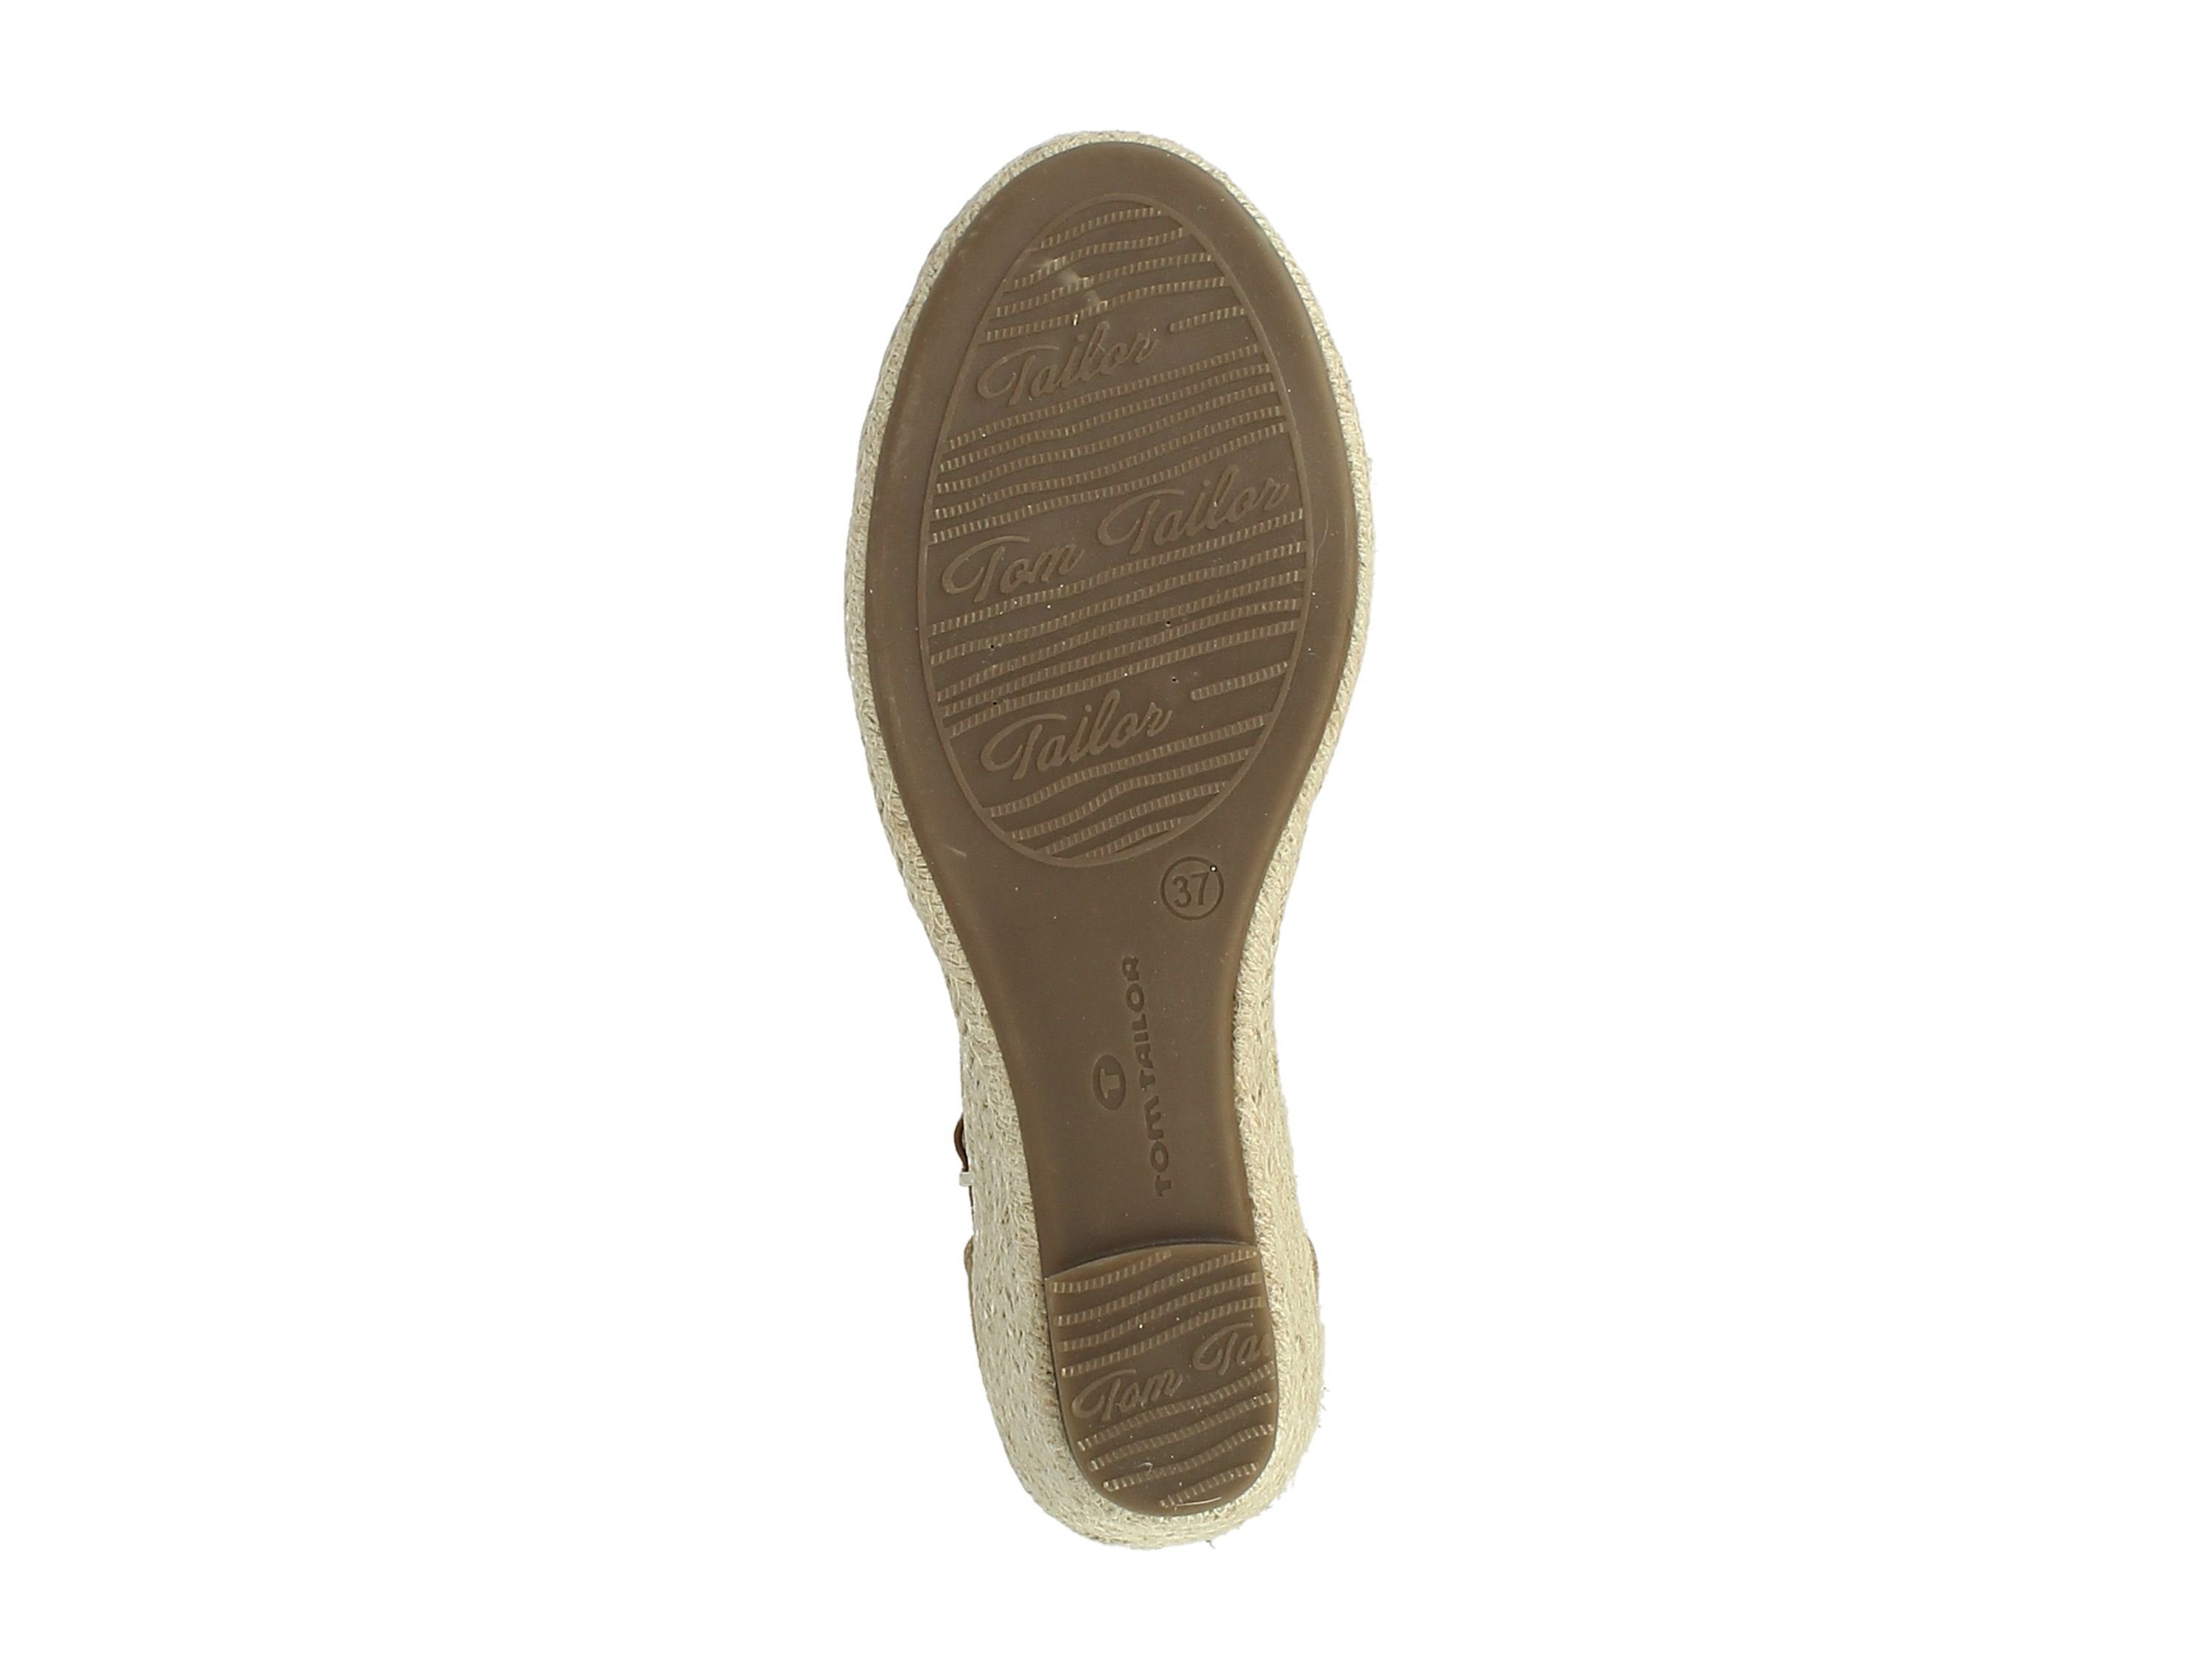 Keilsandalette Tom Tailor Sandaletten für Damen TOM TAILOR offwhite-sand